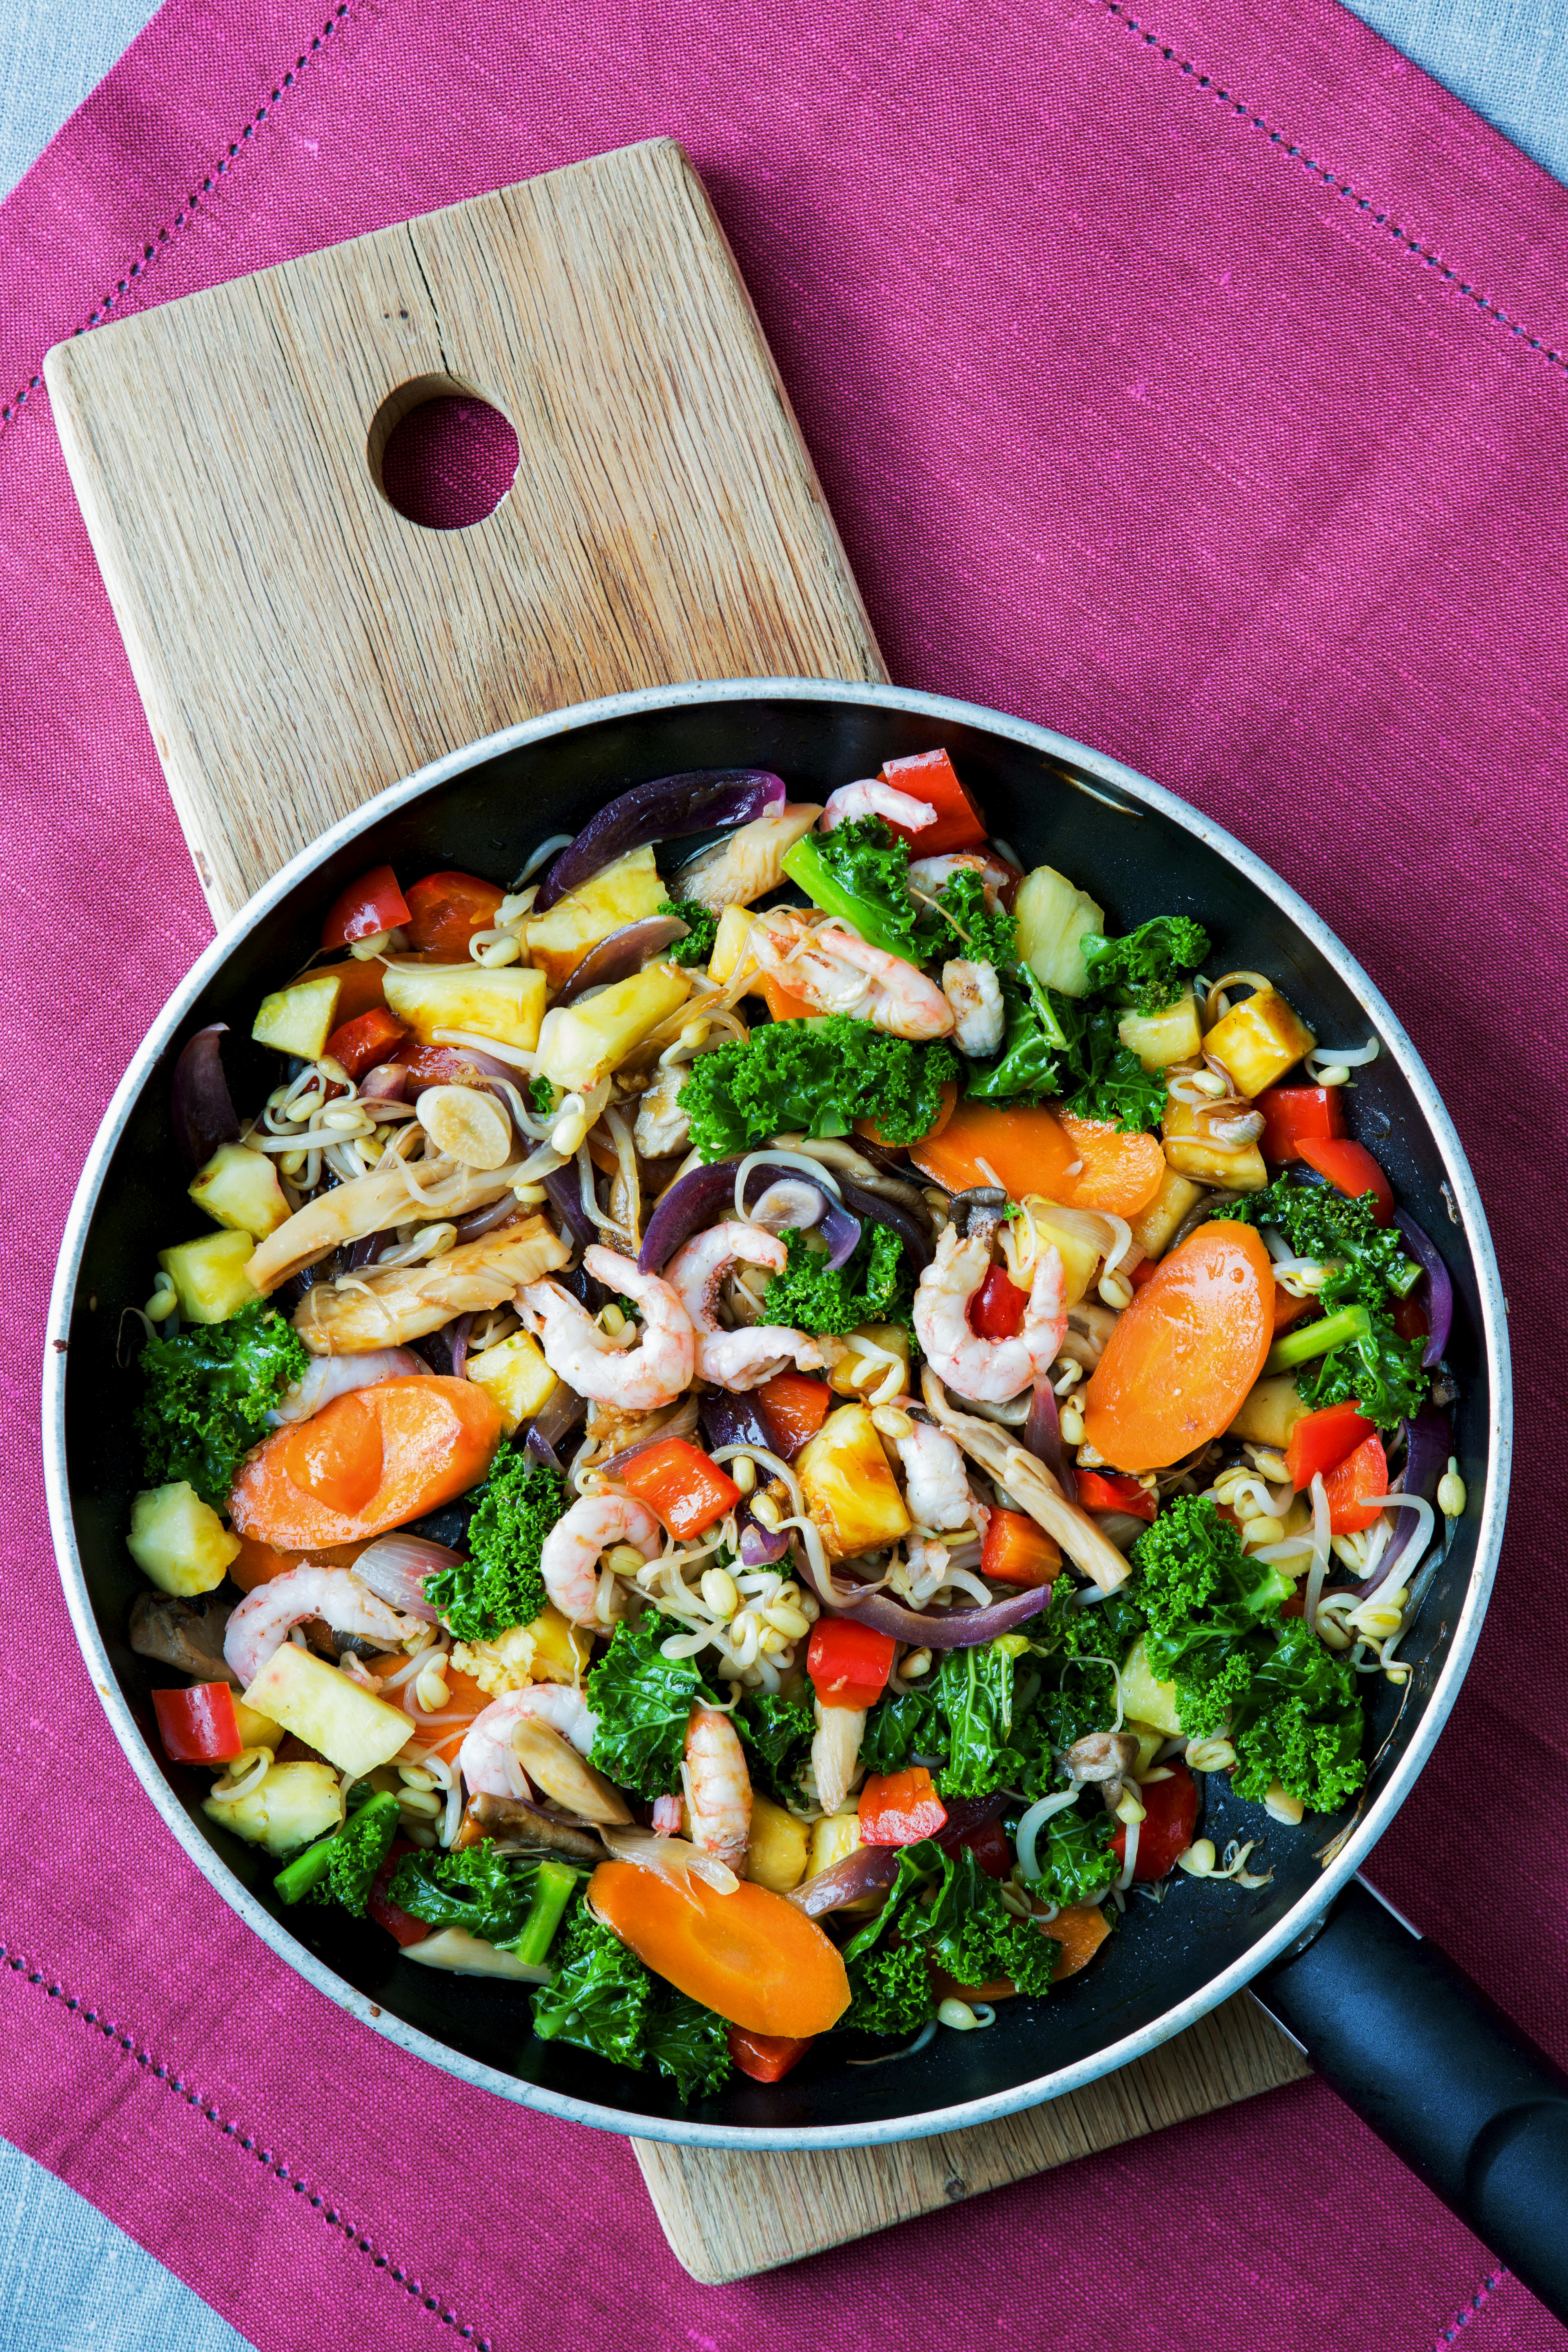 Indbydende ret tilberedt i wok med masser af grøntsager, rejer og ananas